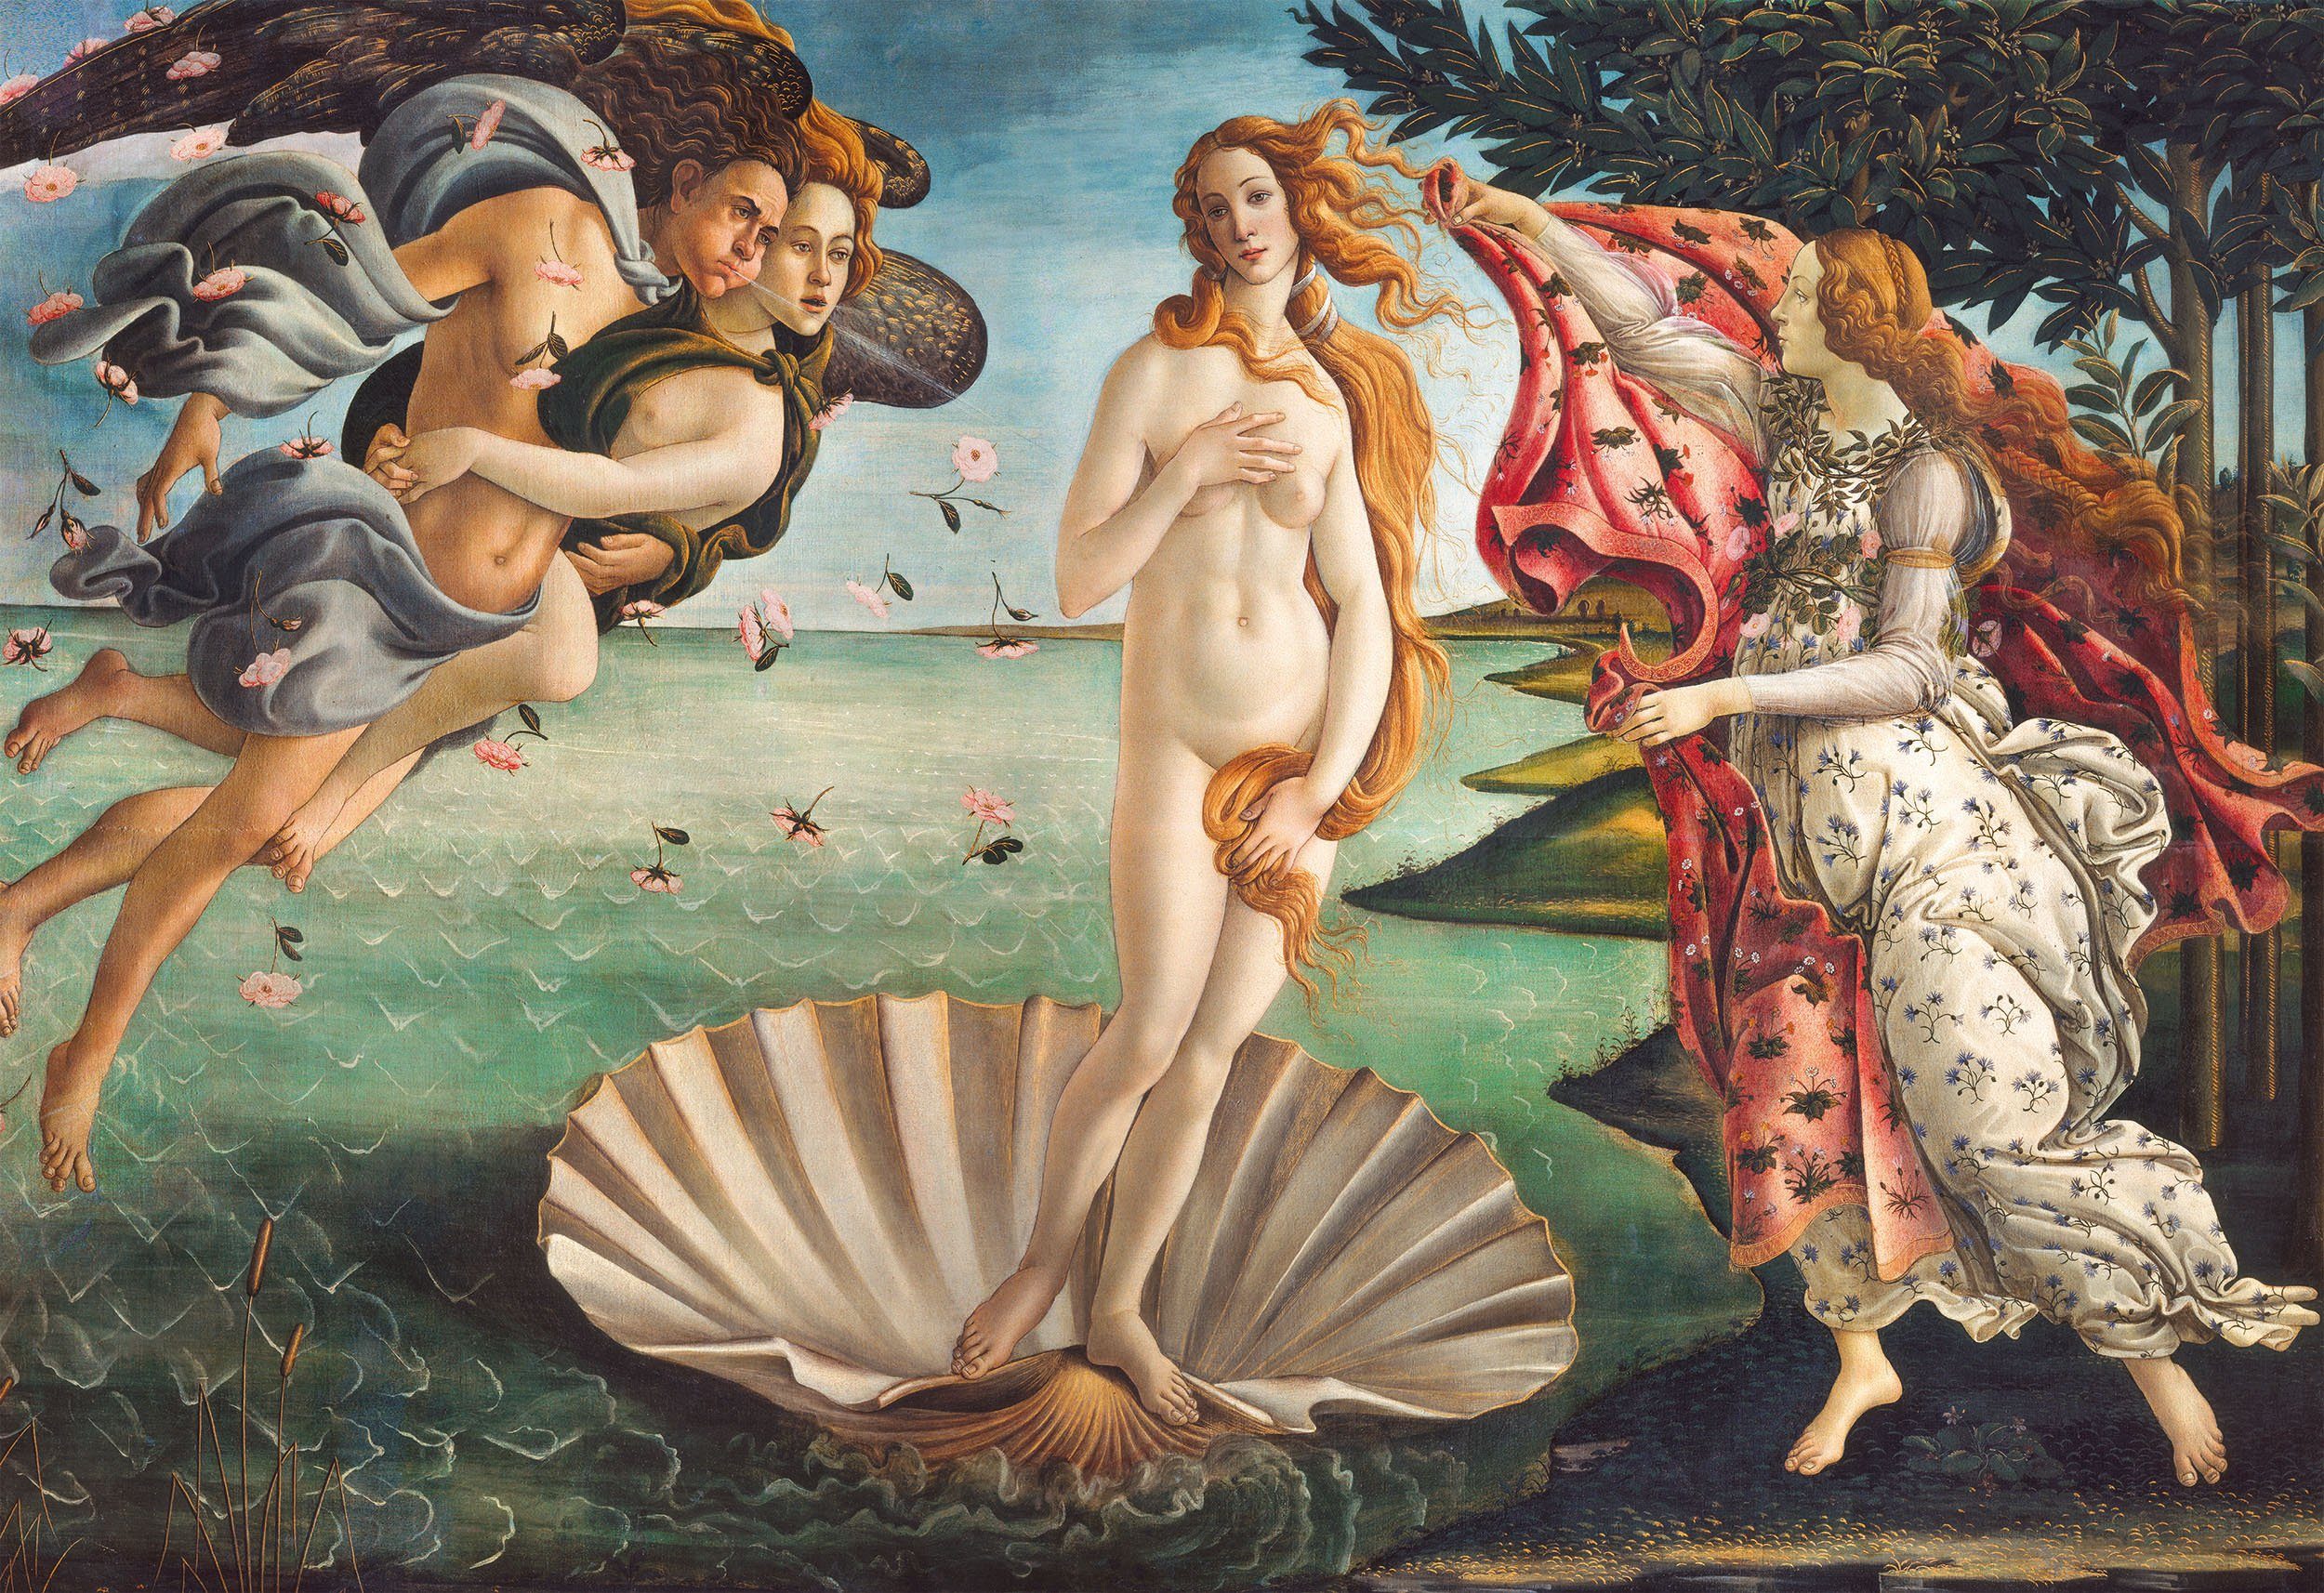 Clementoni® Puzzle Museum - - Venus, Puzzleteile, schützt in der - Collection, Geburt FSC® Wald weltweit 2000 Die Made Botticelli Europe